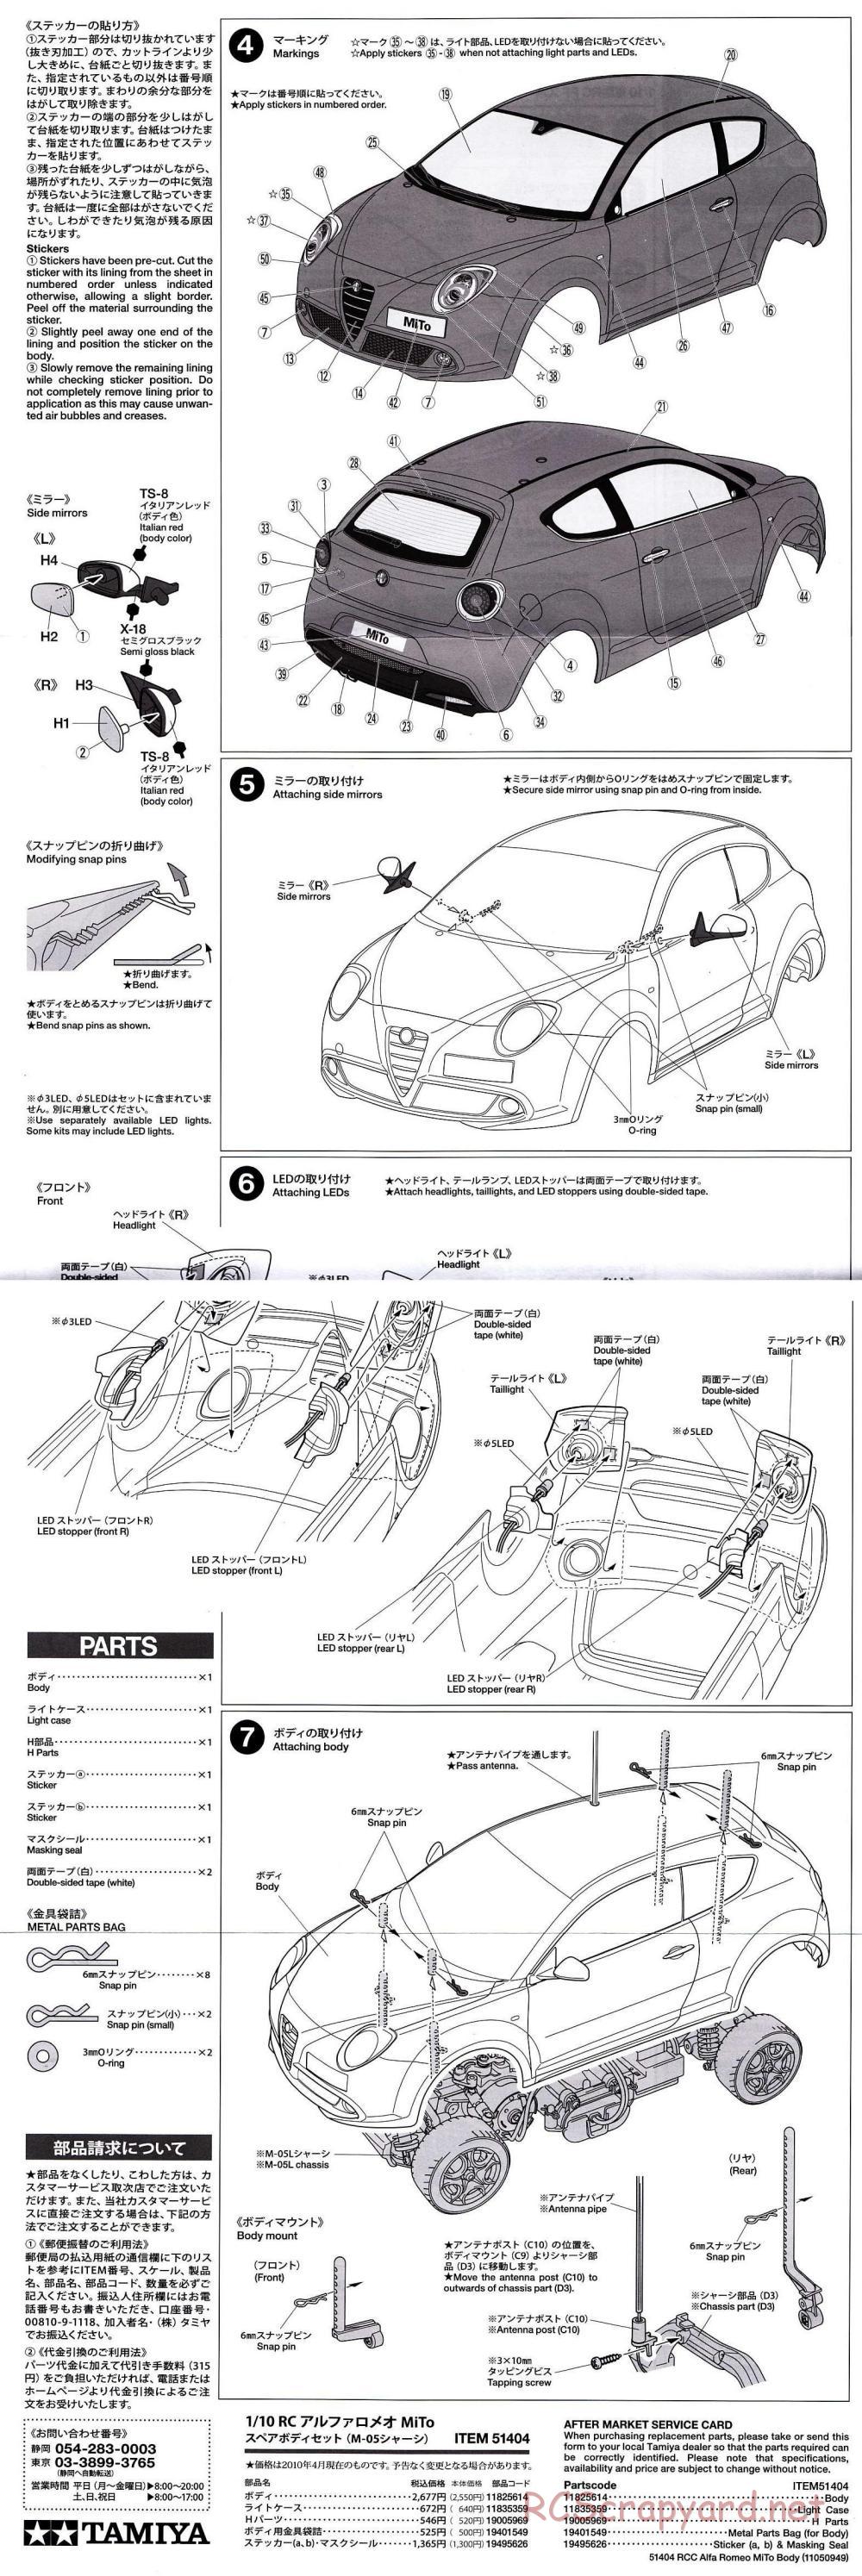 Tamiya - Alfa Romeo MiTo - M-05 Chassis - Body Manual - Page 2